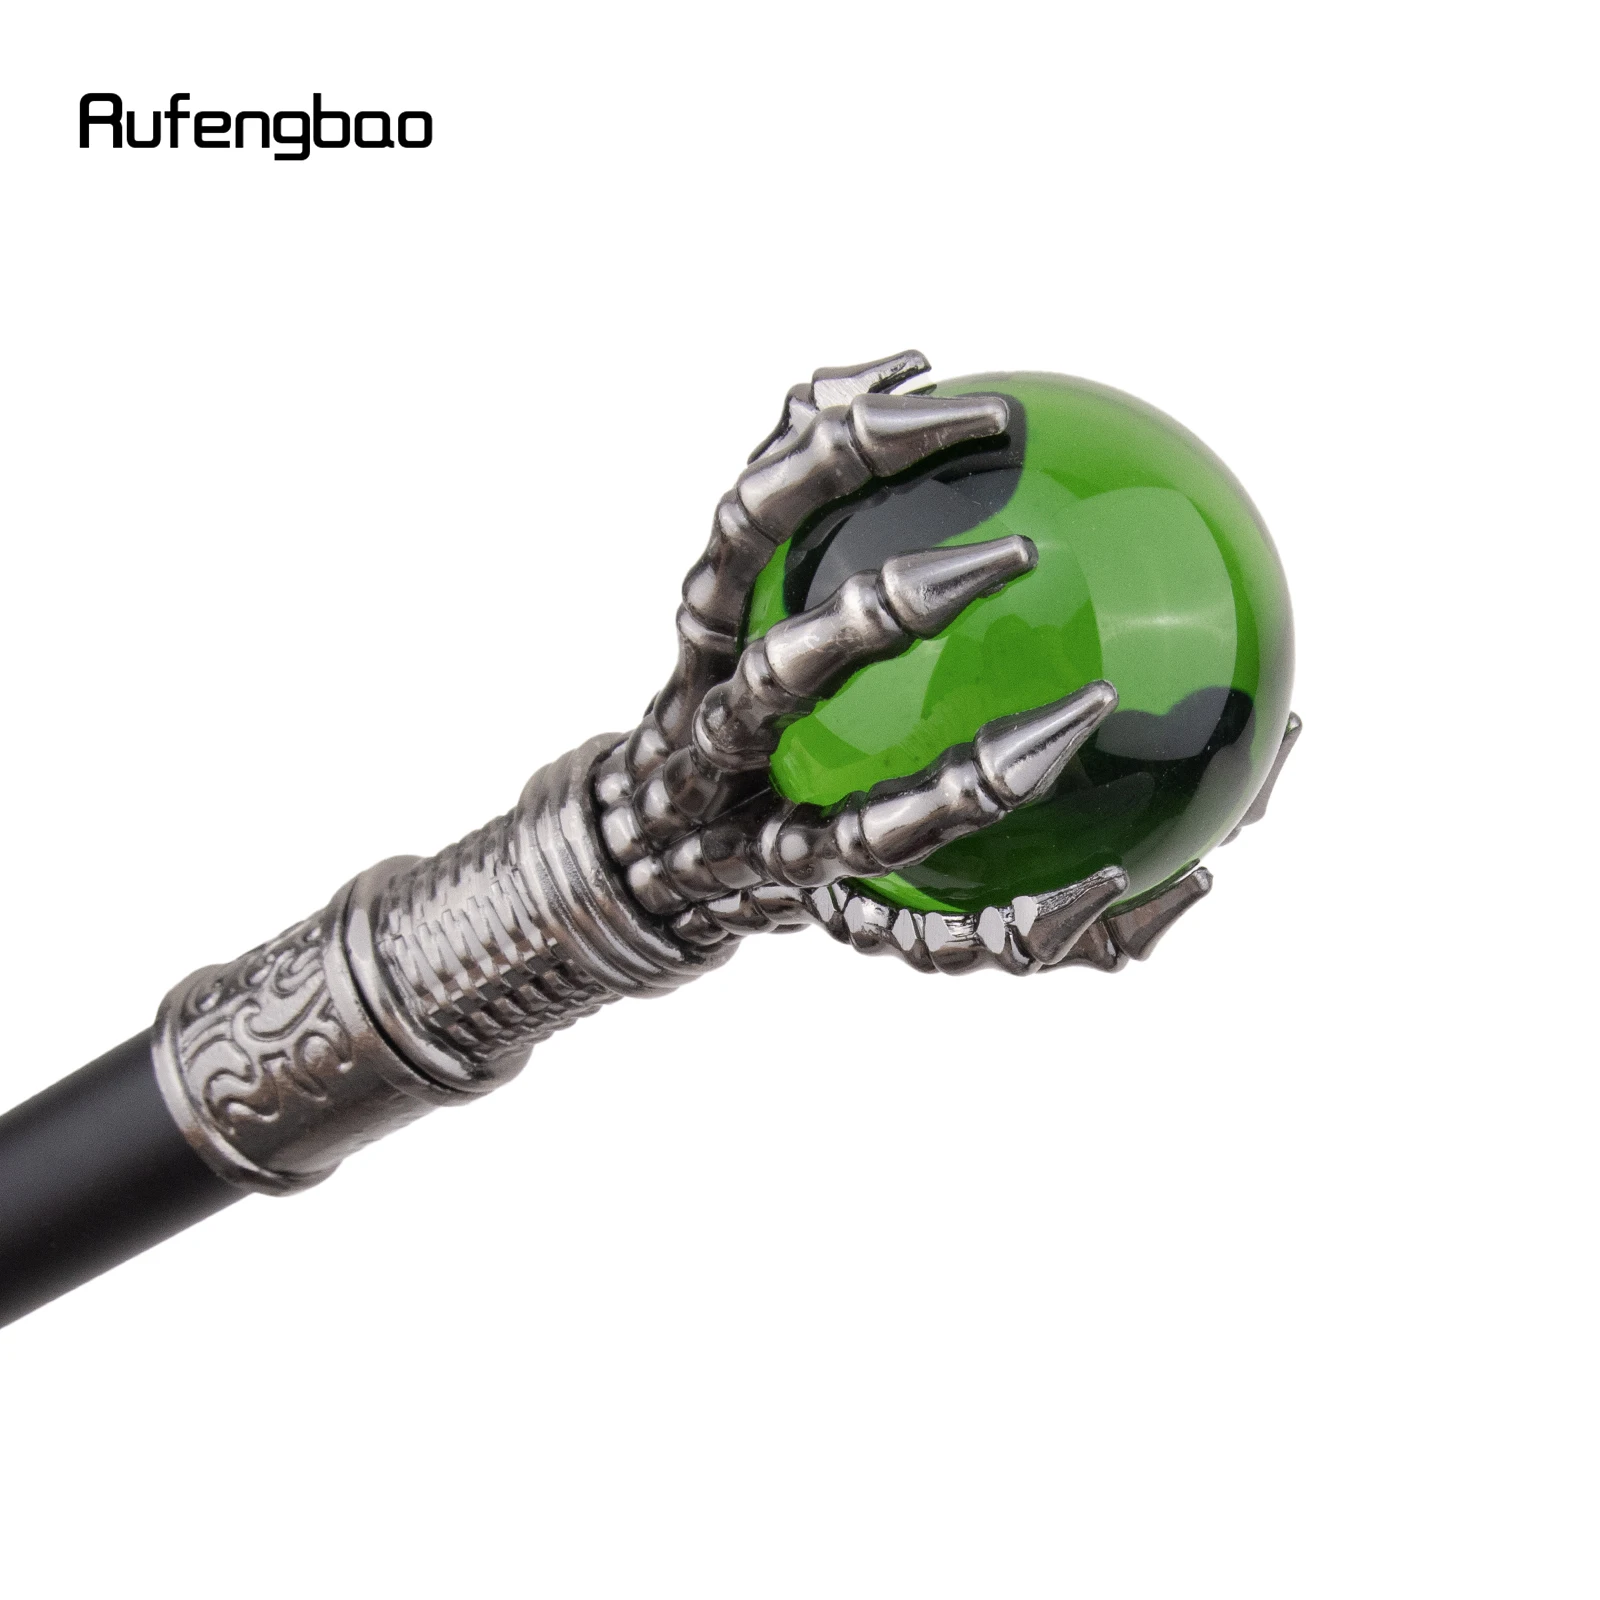 Bola de cristal verde de una sola articulación, bastón decorativo de vampiro para fiesta de cosplay, bastón para caminar, Crosier de Halloween, 93cm